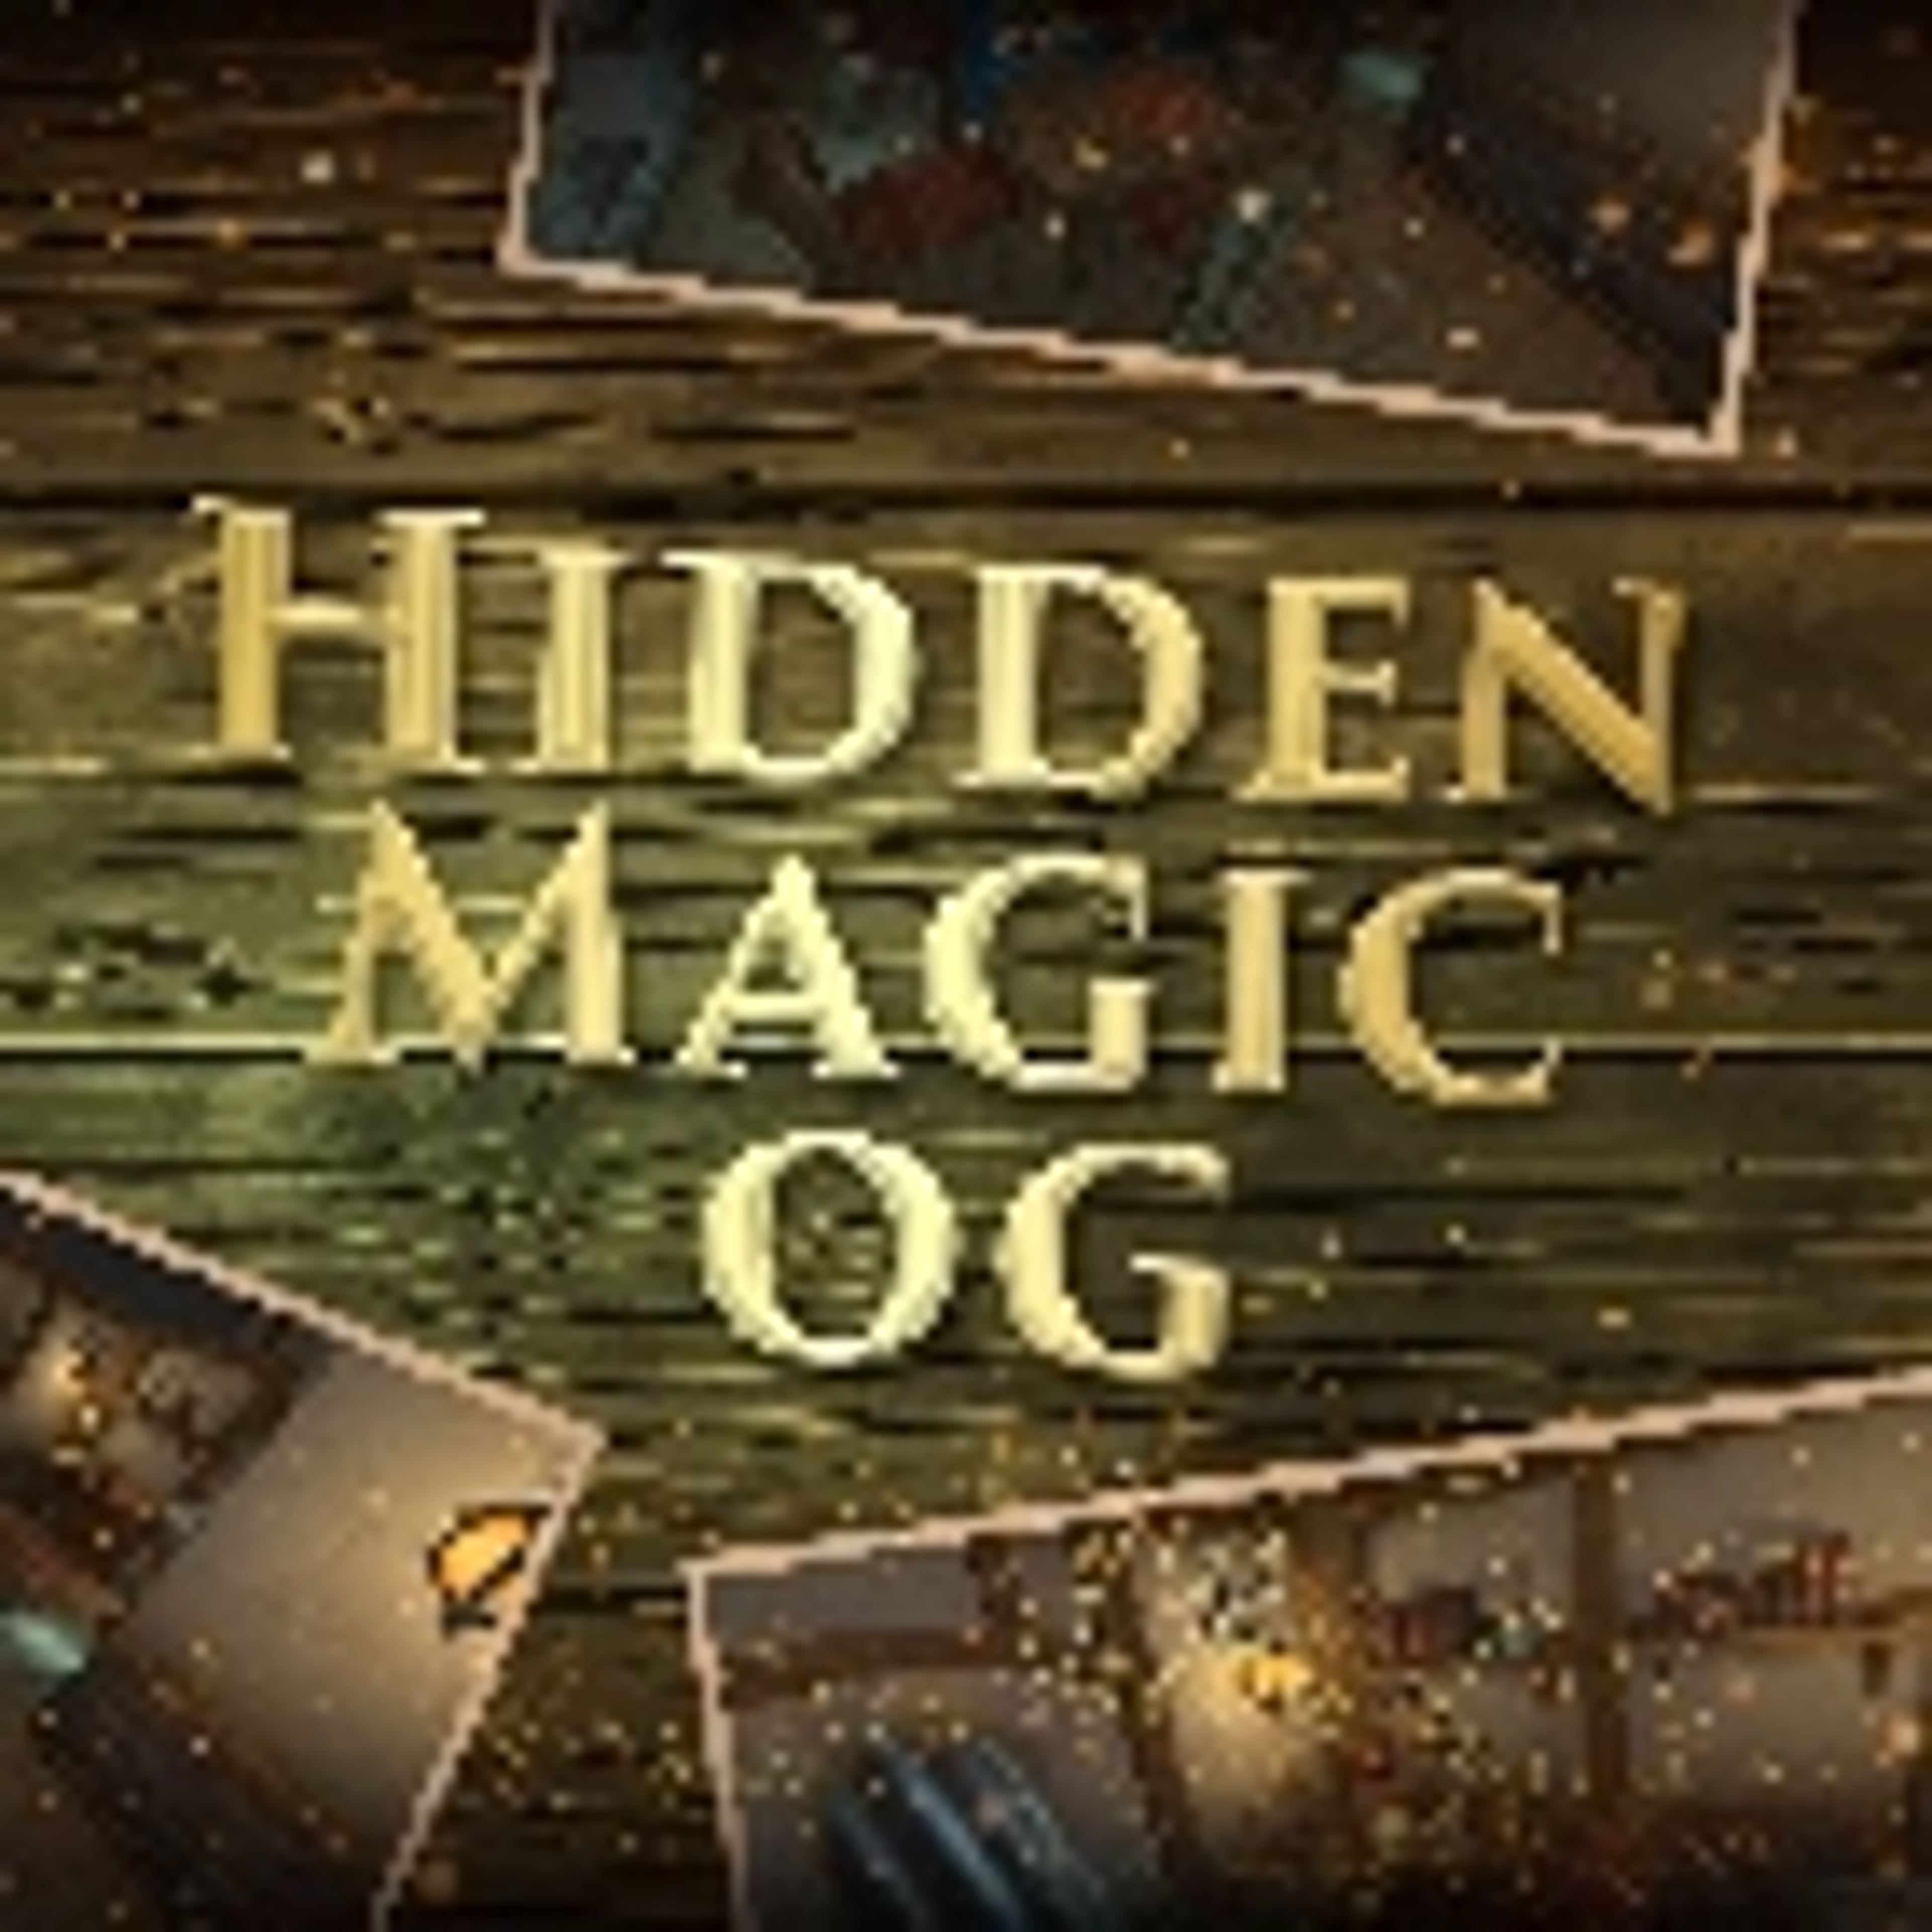 Hidden Magic OG